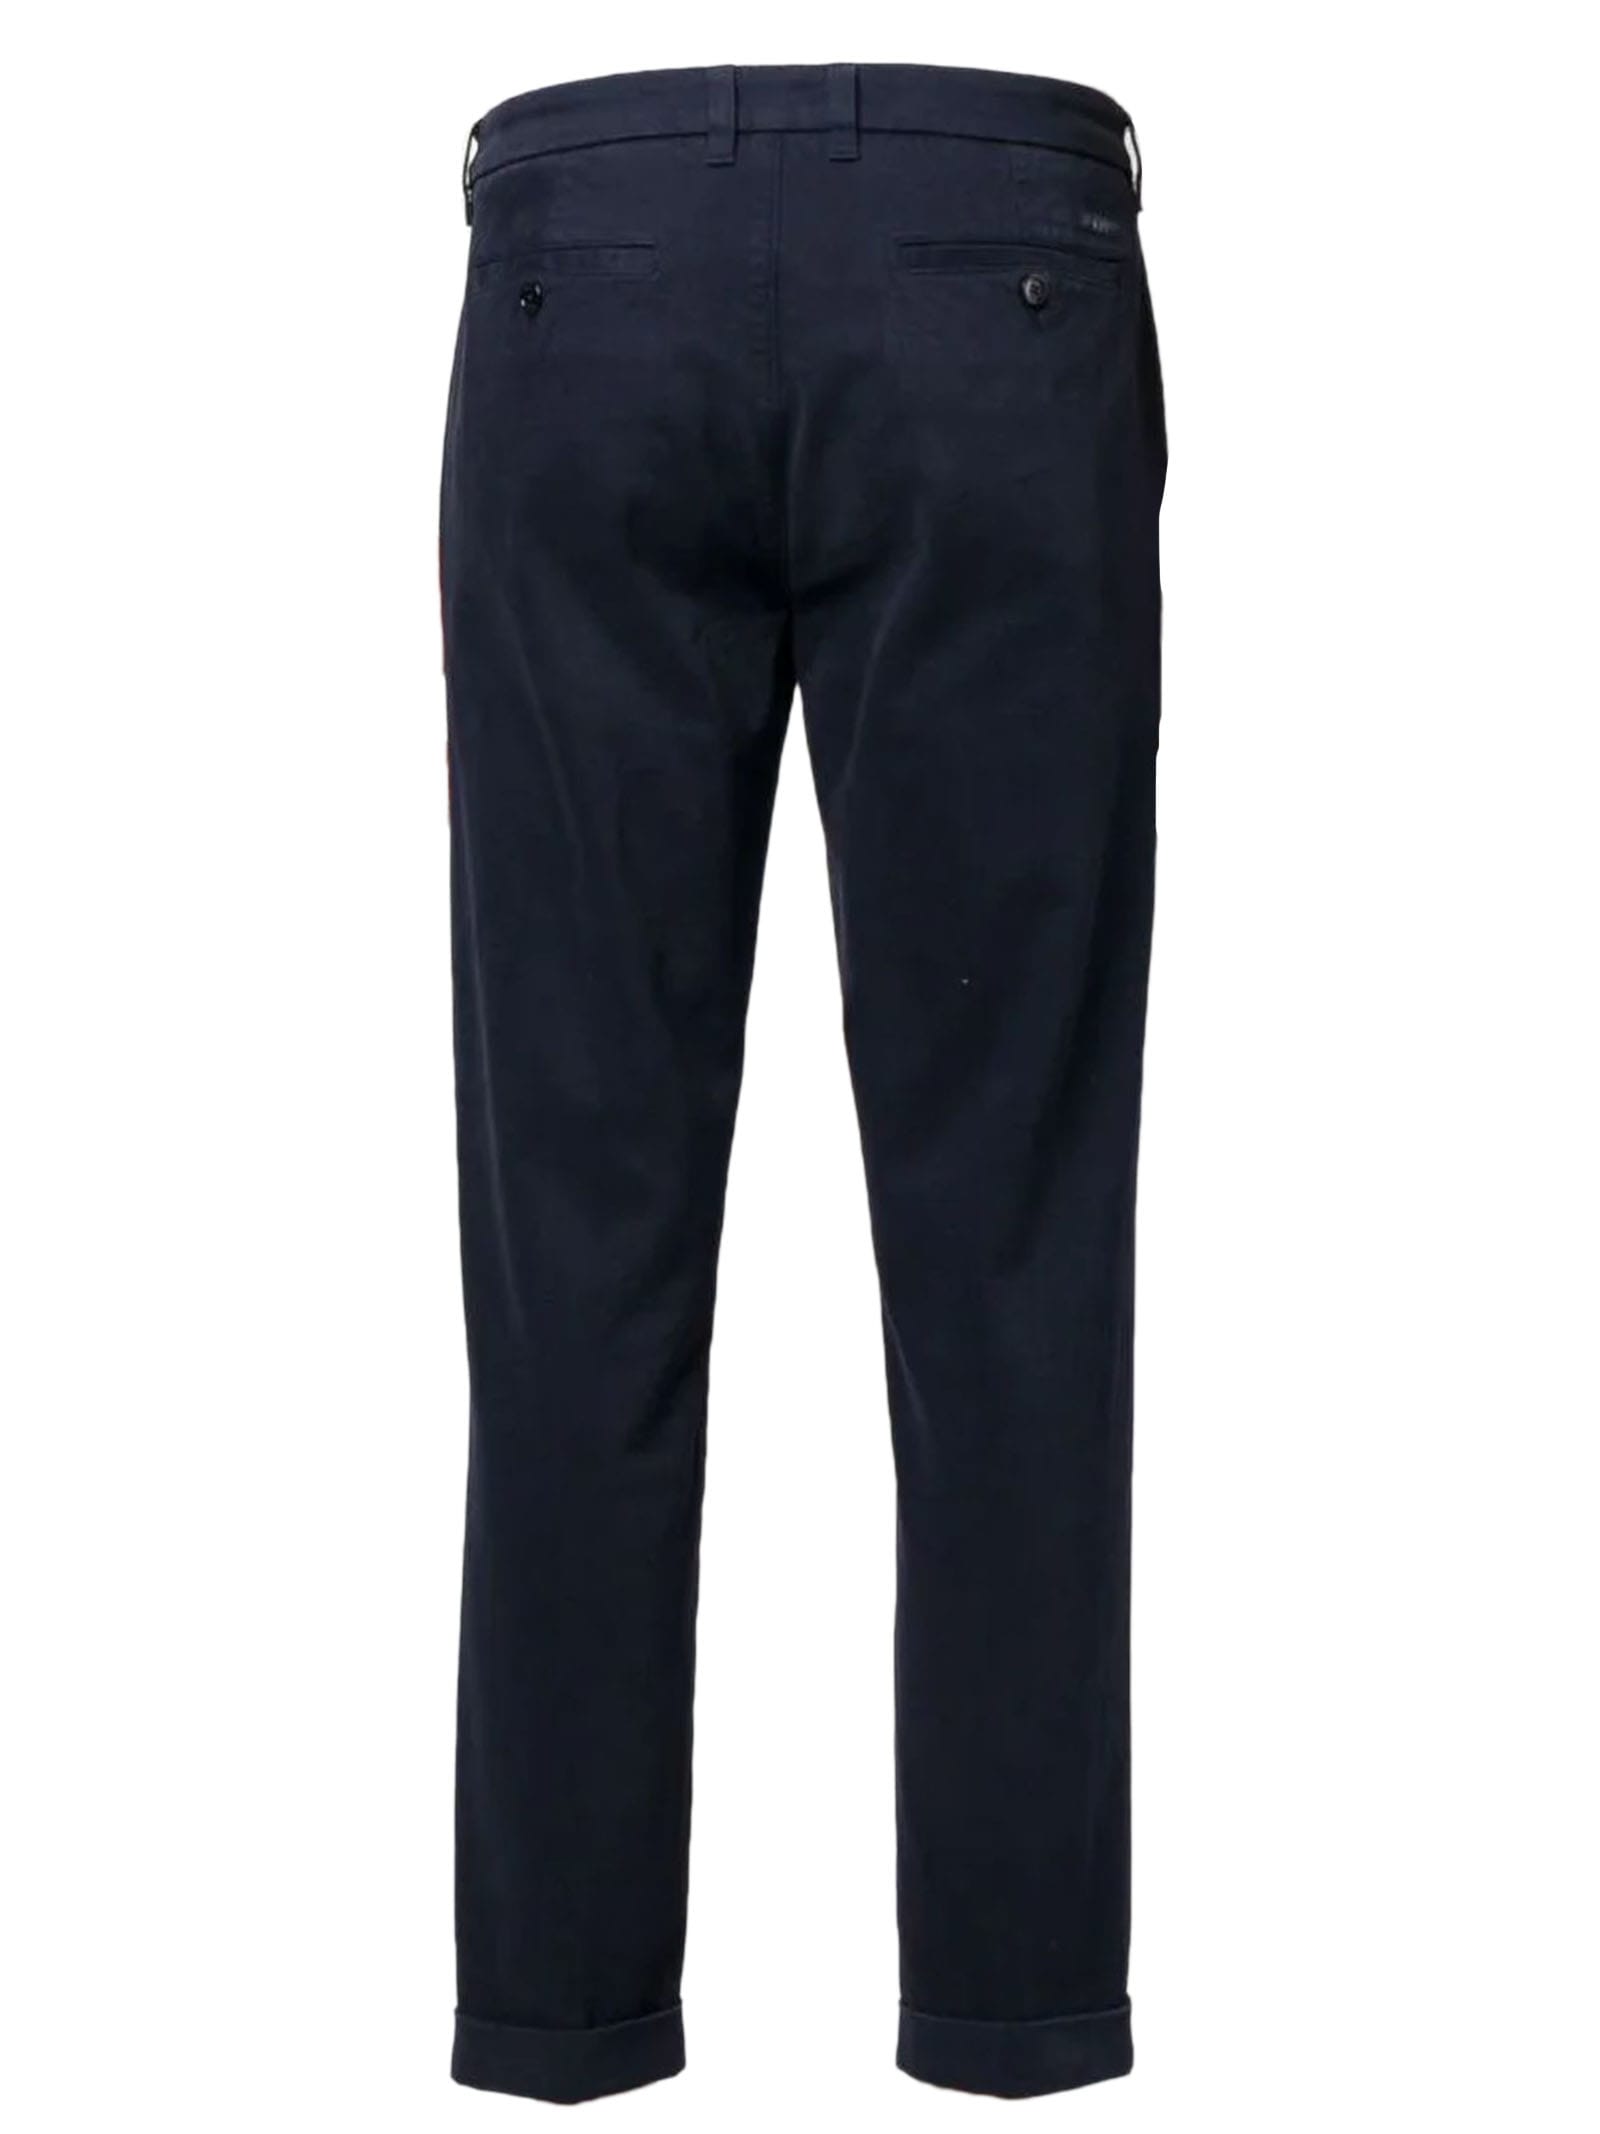 Shop Fay Navy Blue Capri Cotton Trousers